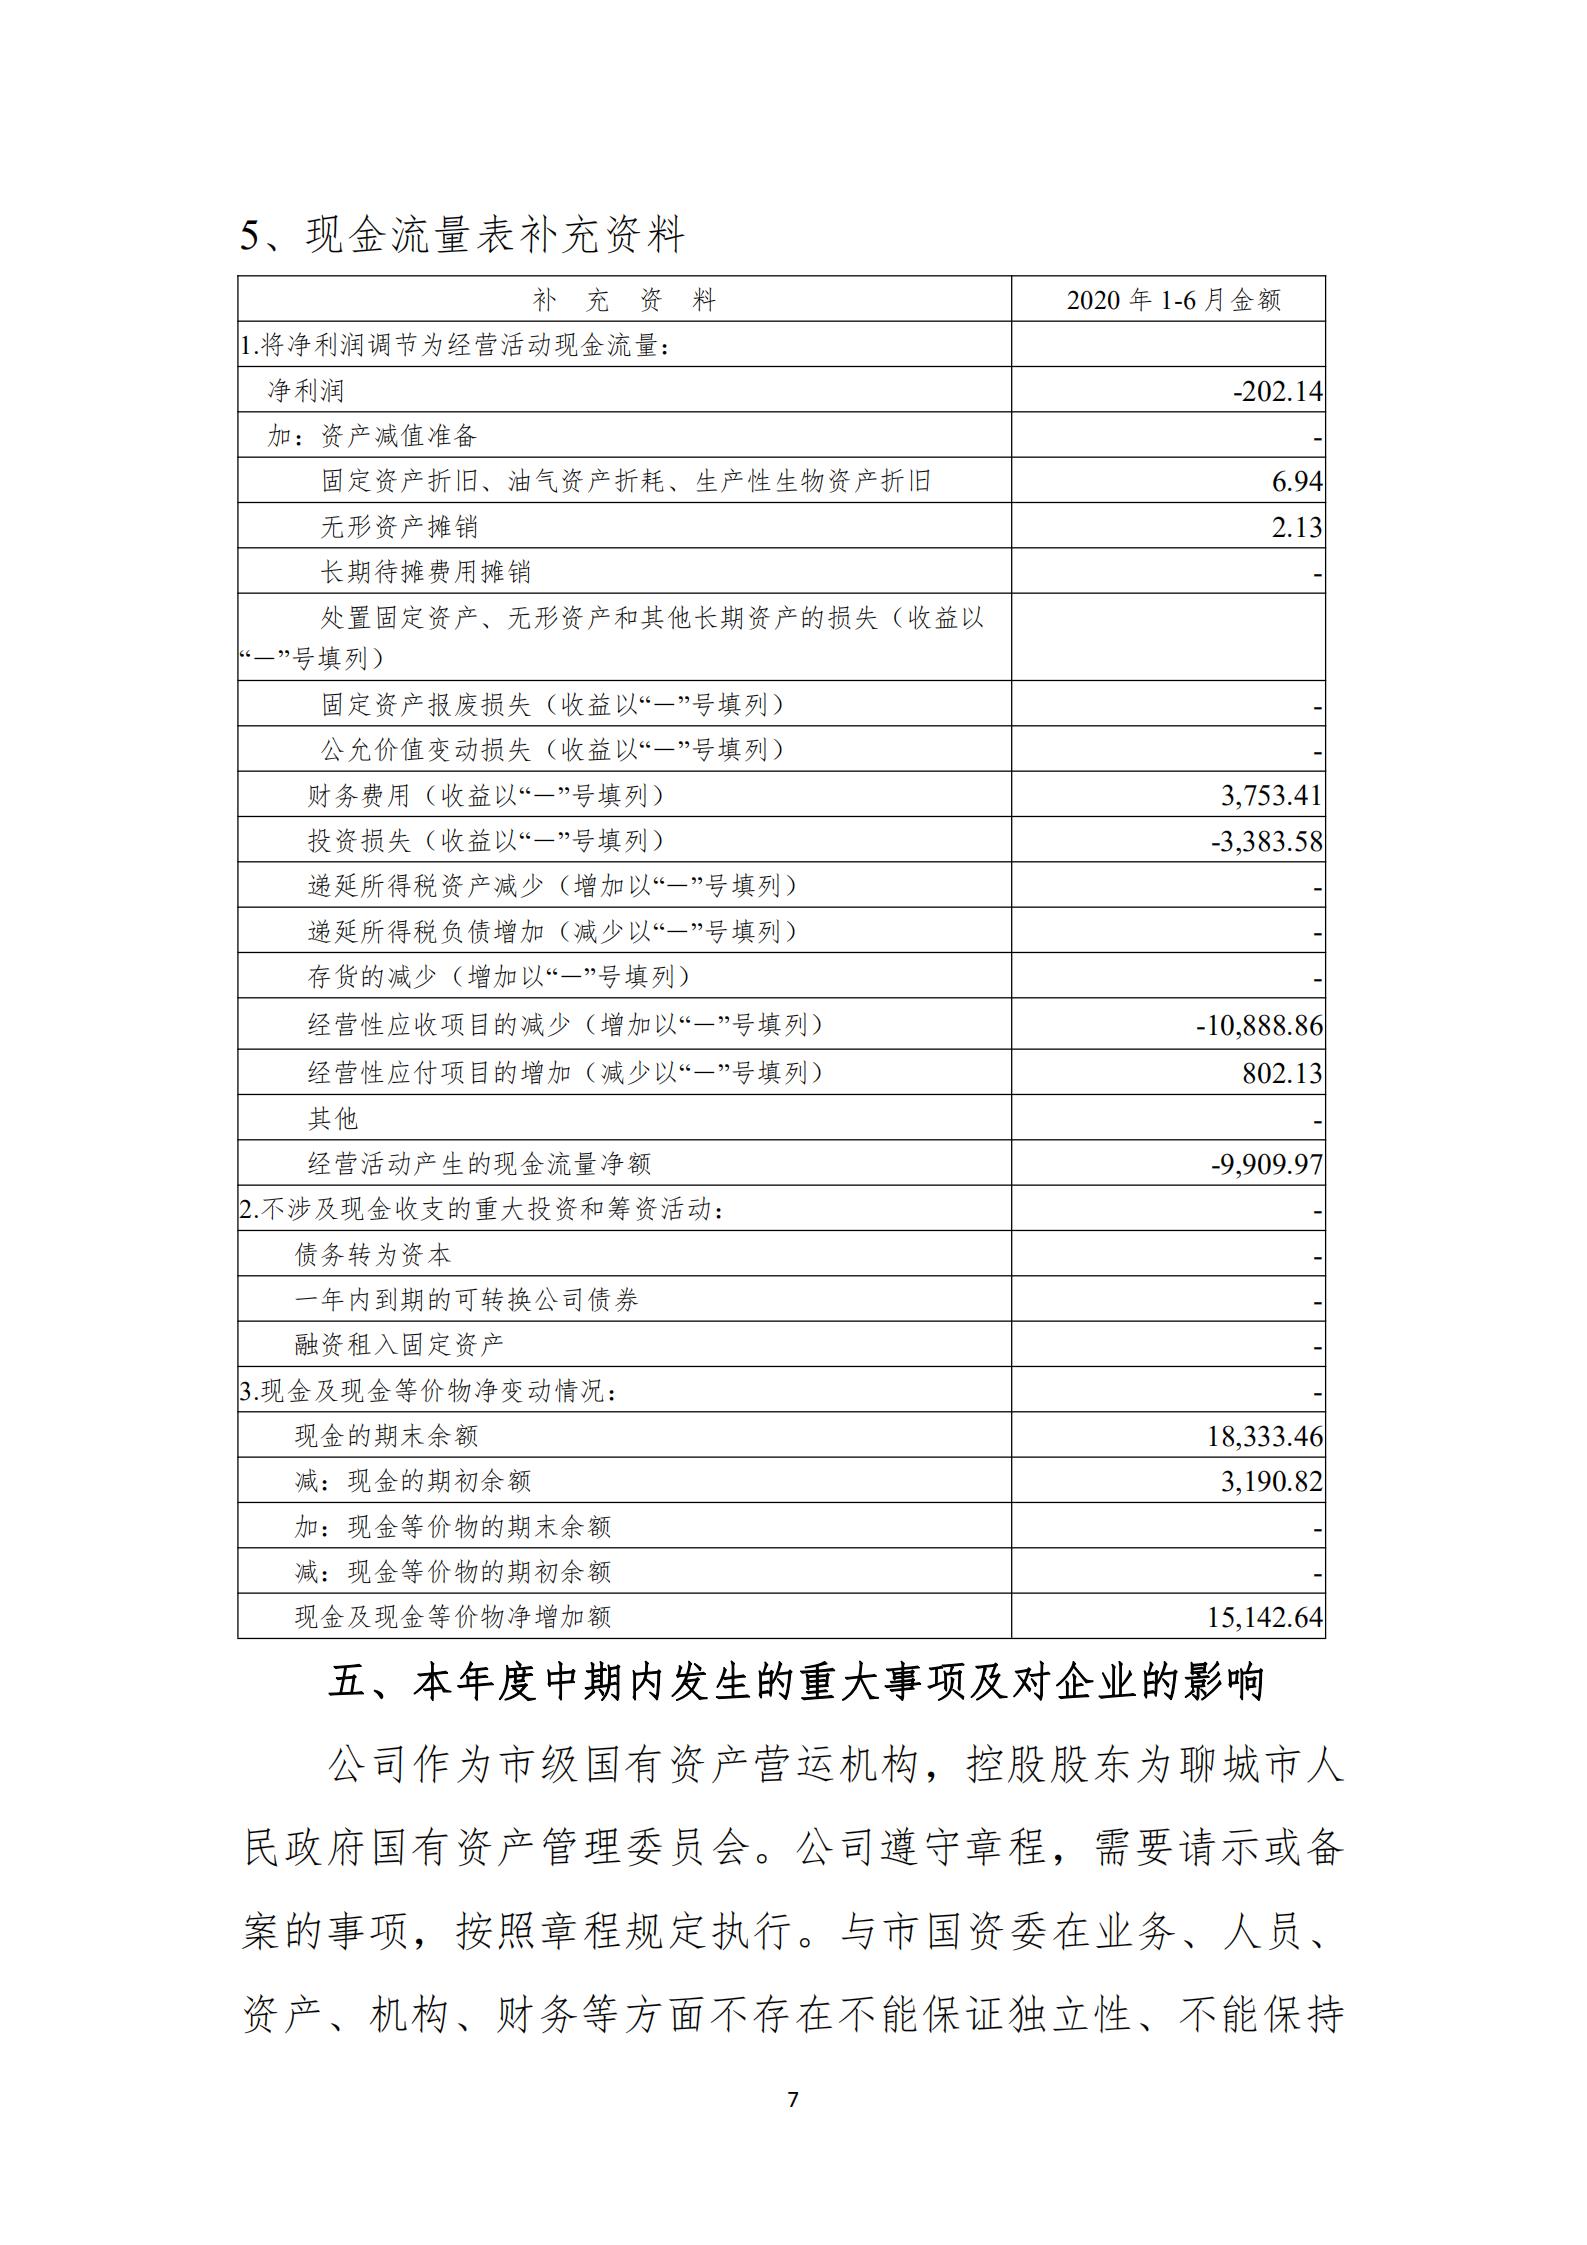 昌润投资控股集团有限公司2020年中期信息公开资料